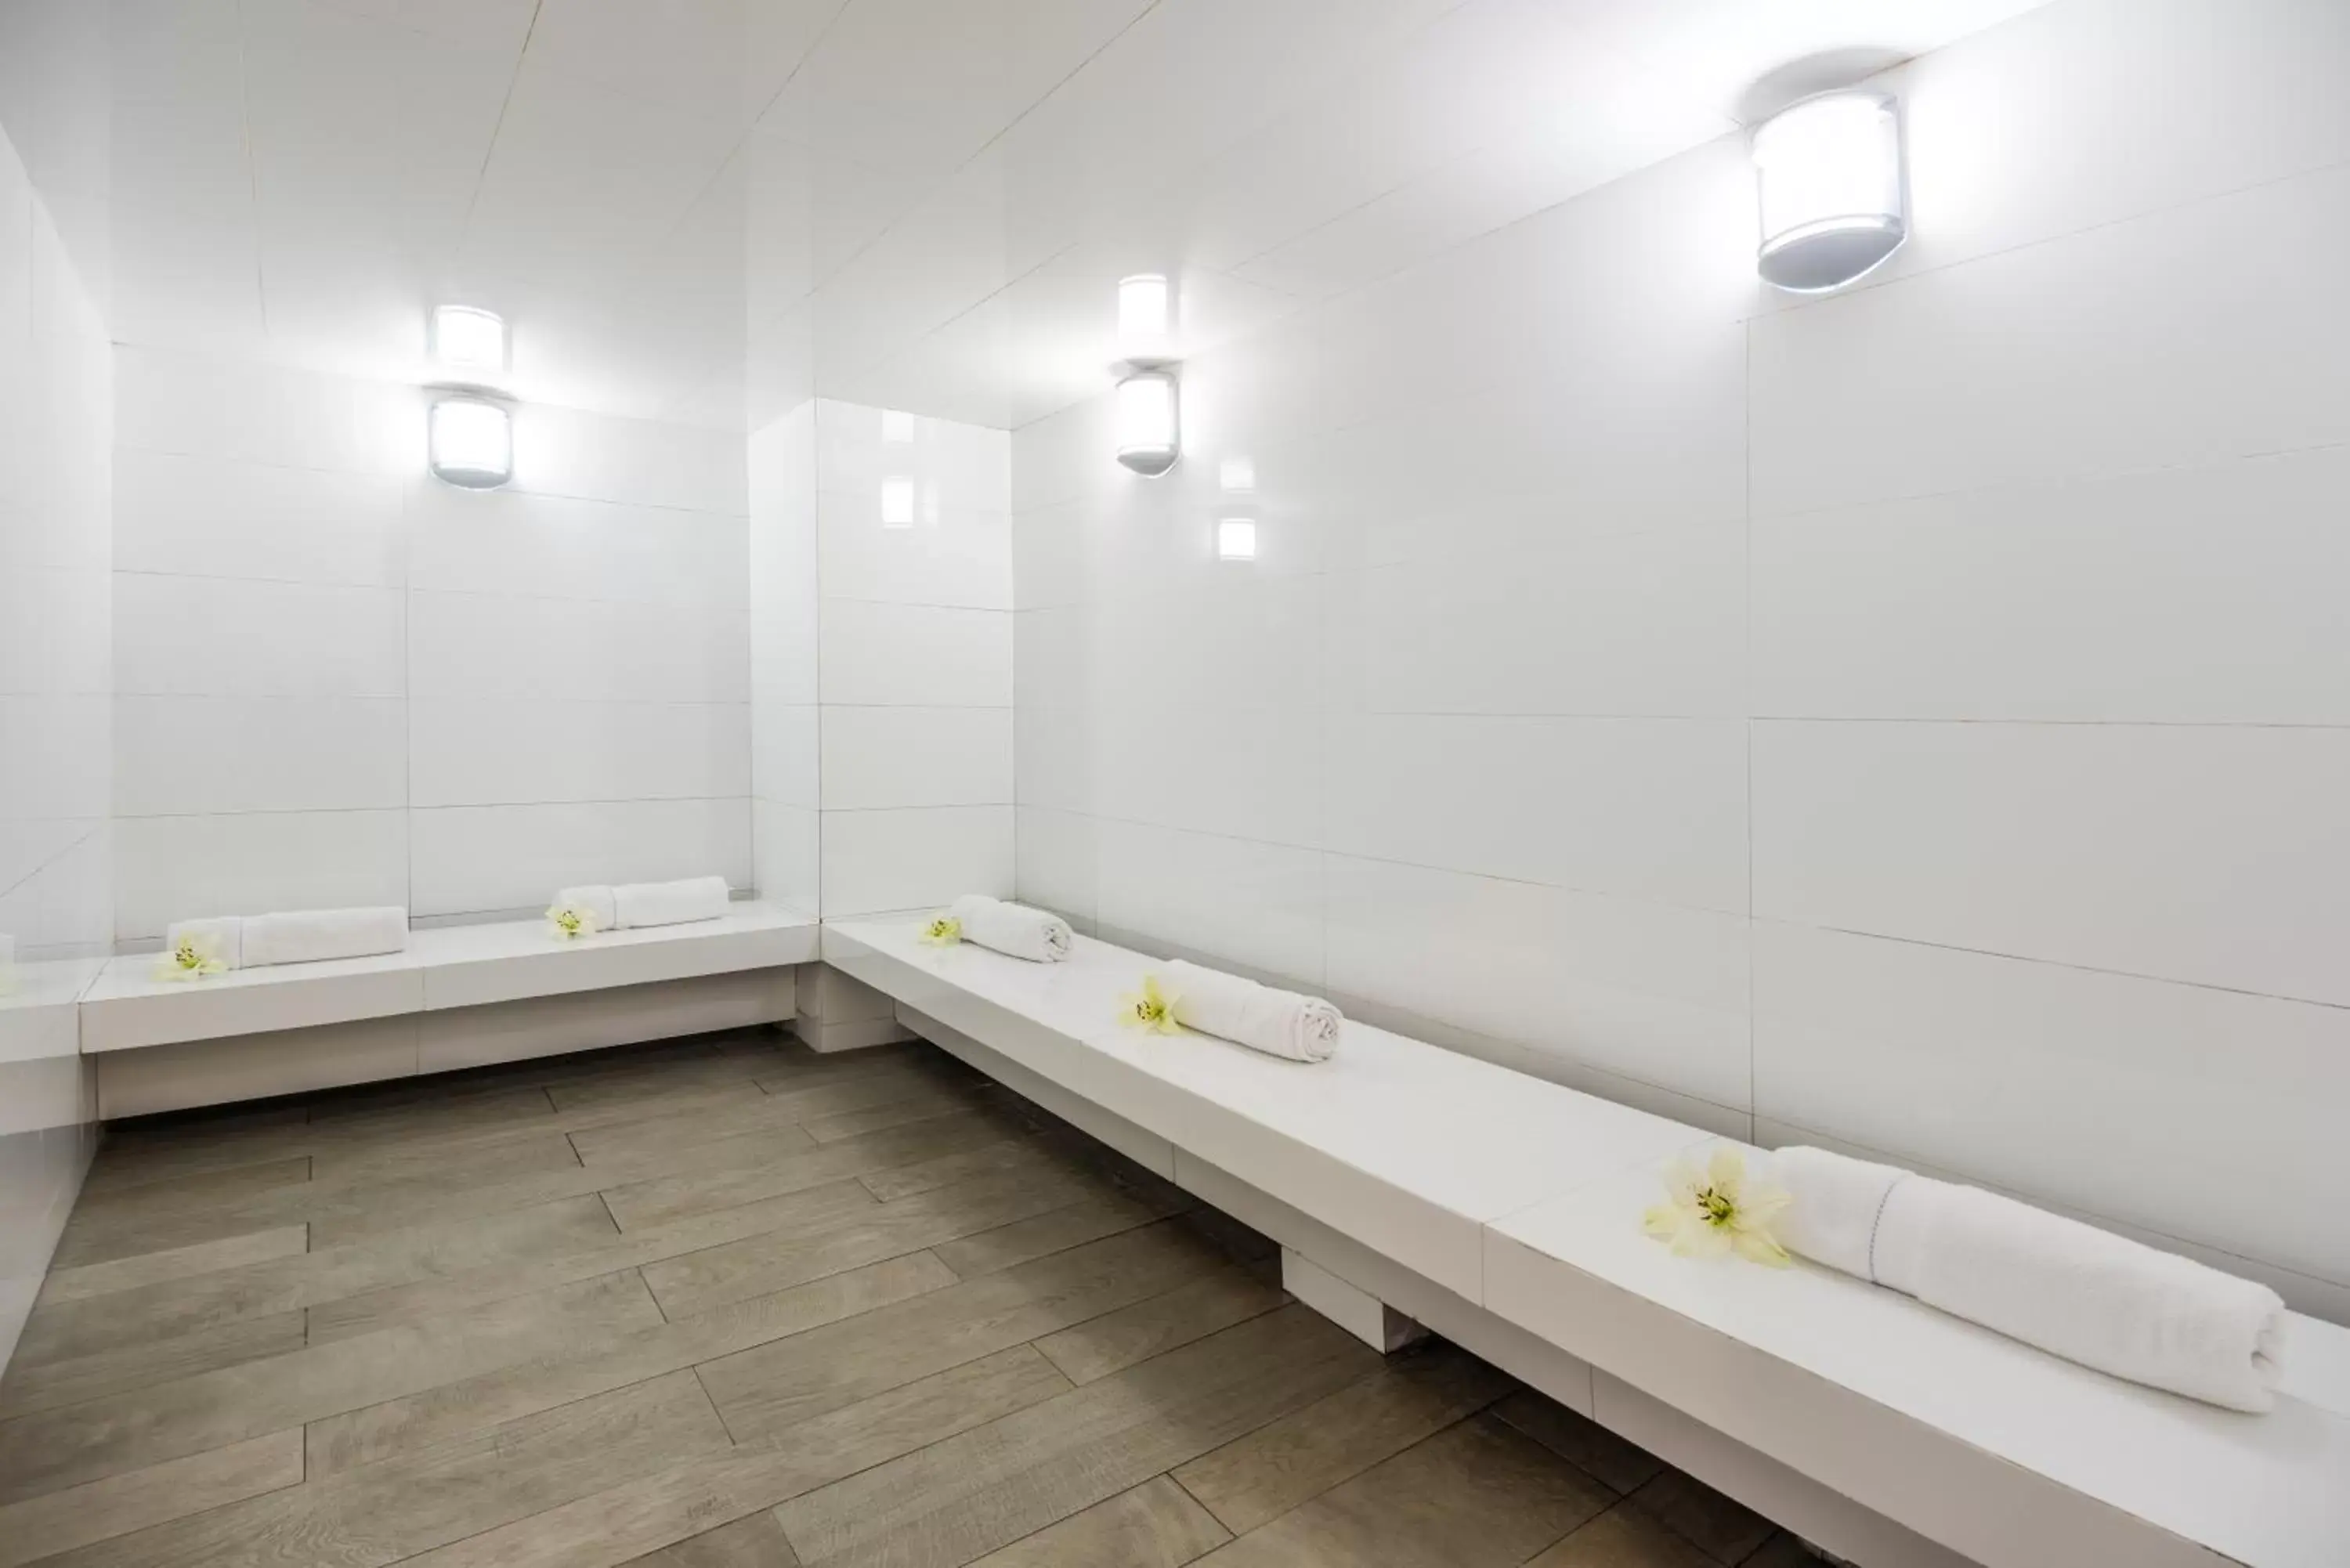 Spa and wellness centre/facilities, Bathroom in Cosmos 100 Hotel & Centro de Convenciones - Hoteles Cosmos